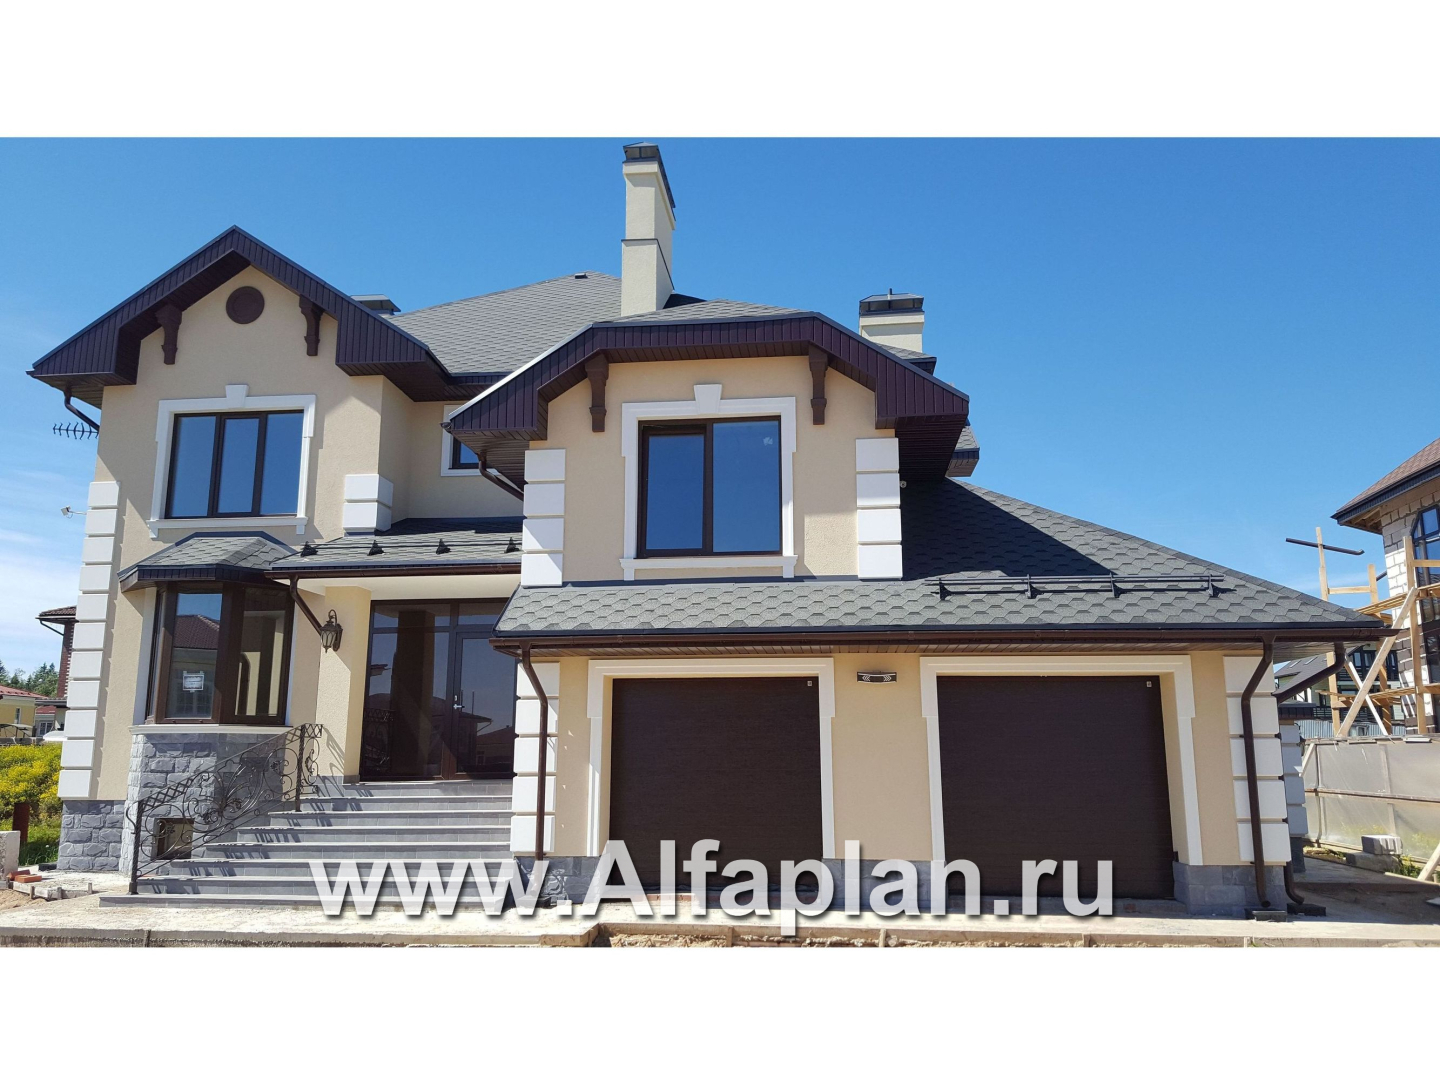 Проекты домов Альфаплан - «Эвридика» - красивый загородный дом с гаражом на две машины - дополнительное изображение №1